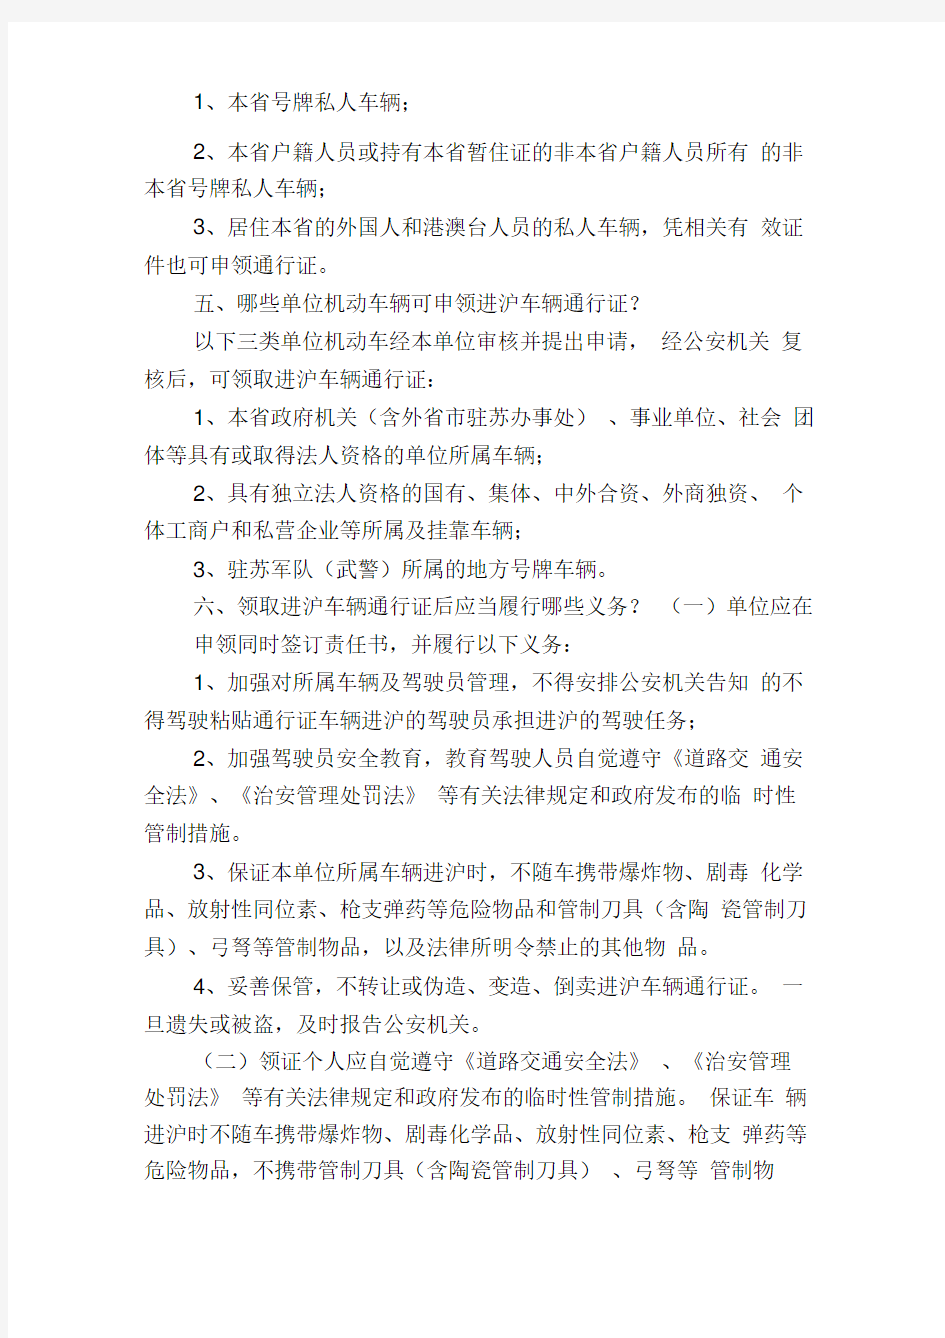 上海世博会期间进沪车辆通行证申办工作问答(供对外宣传用)